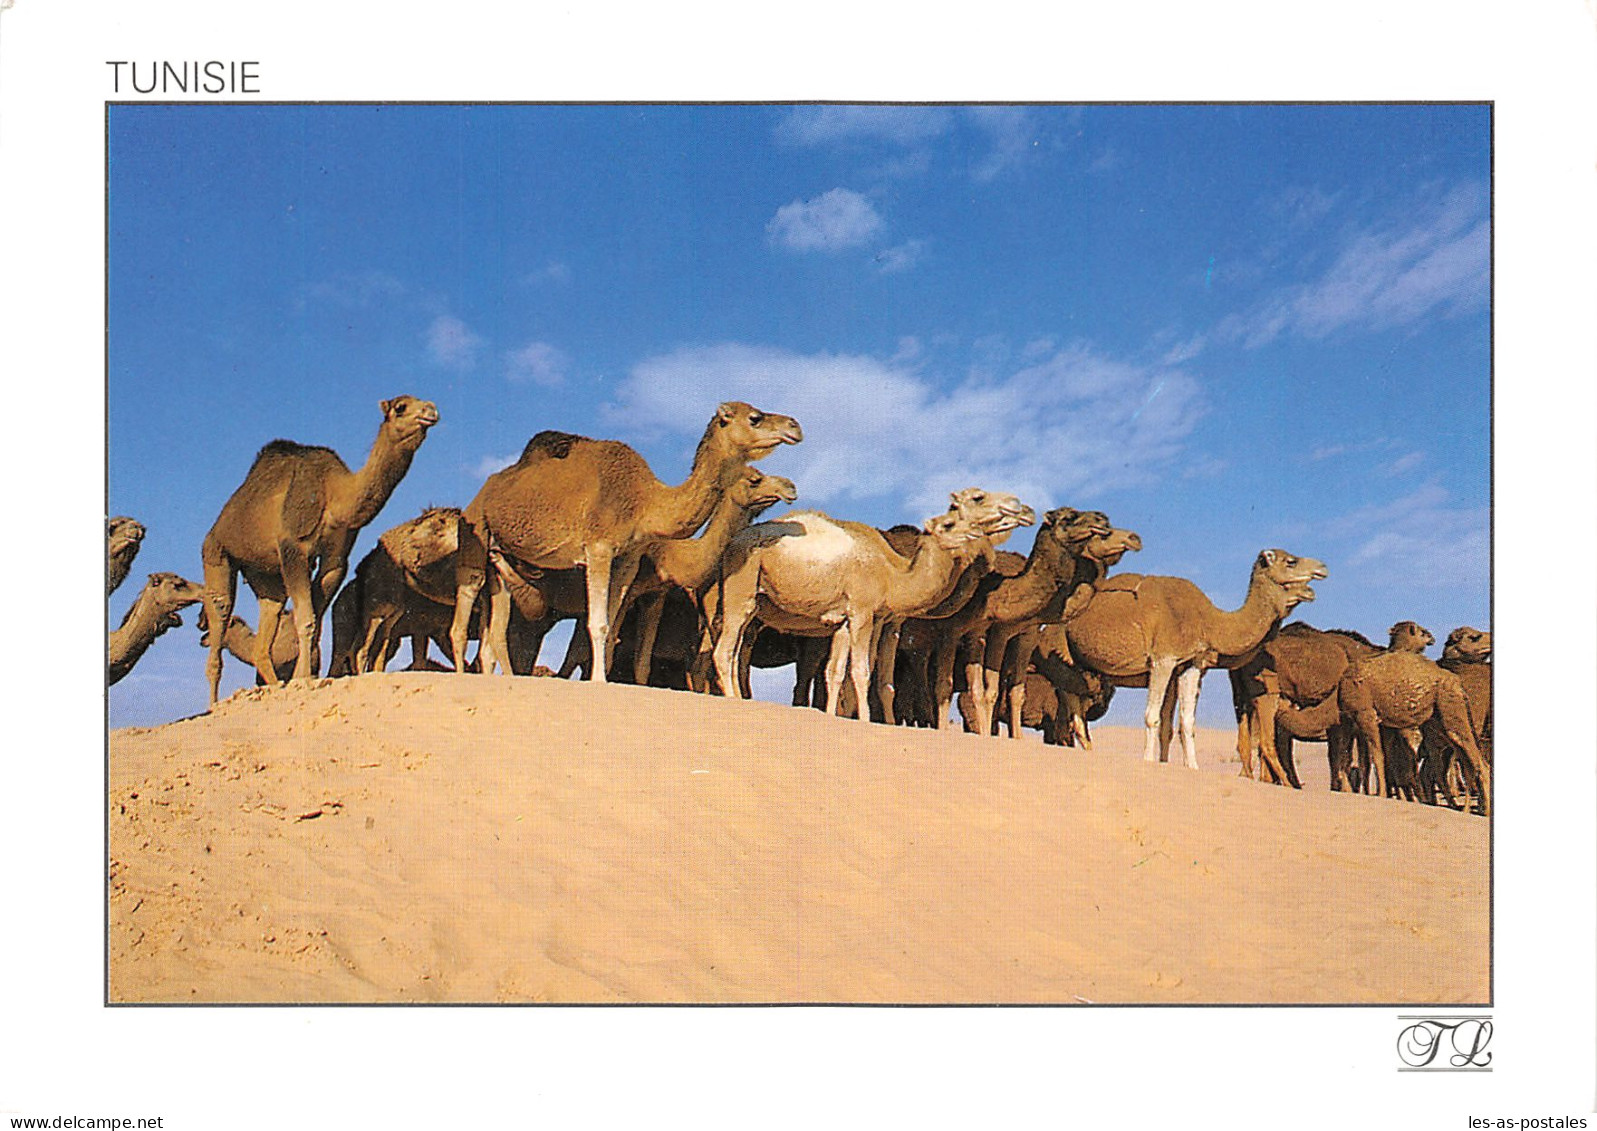 TUNISIE CAMELS - Tunisie